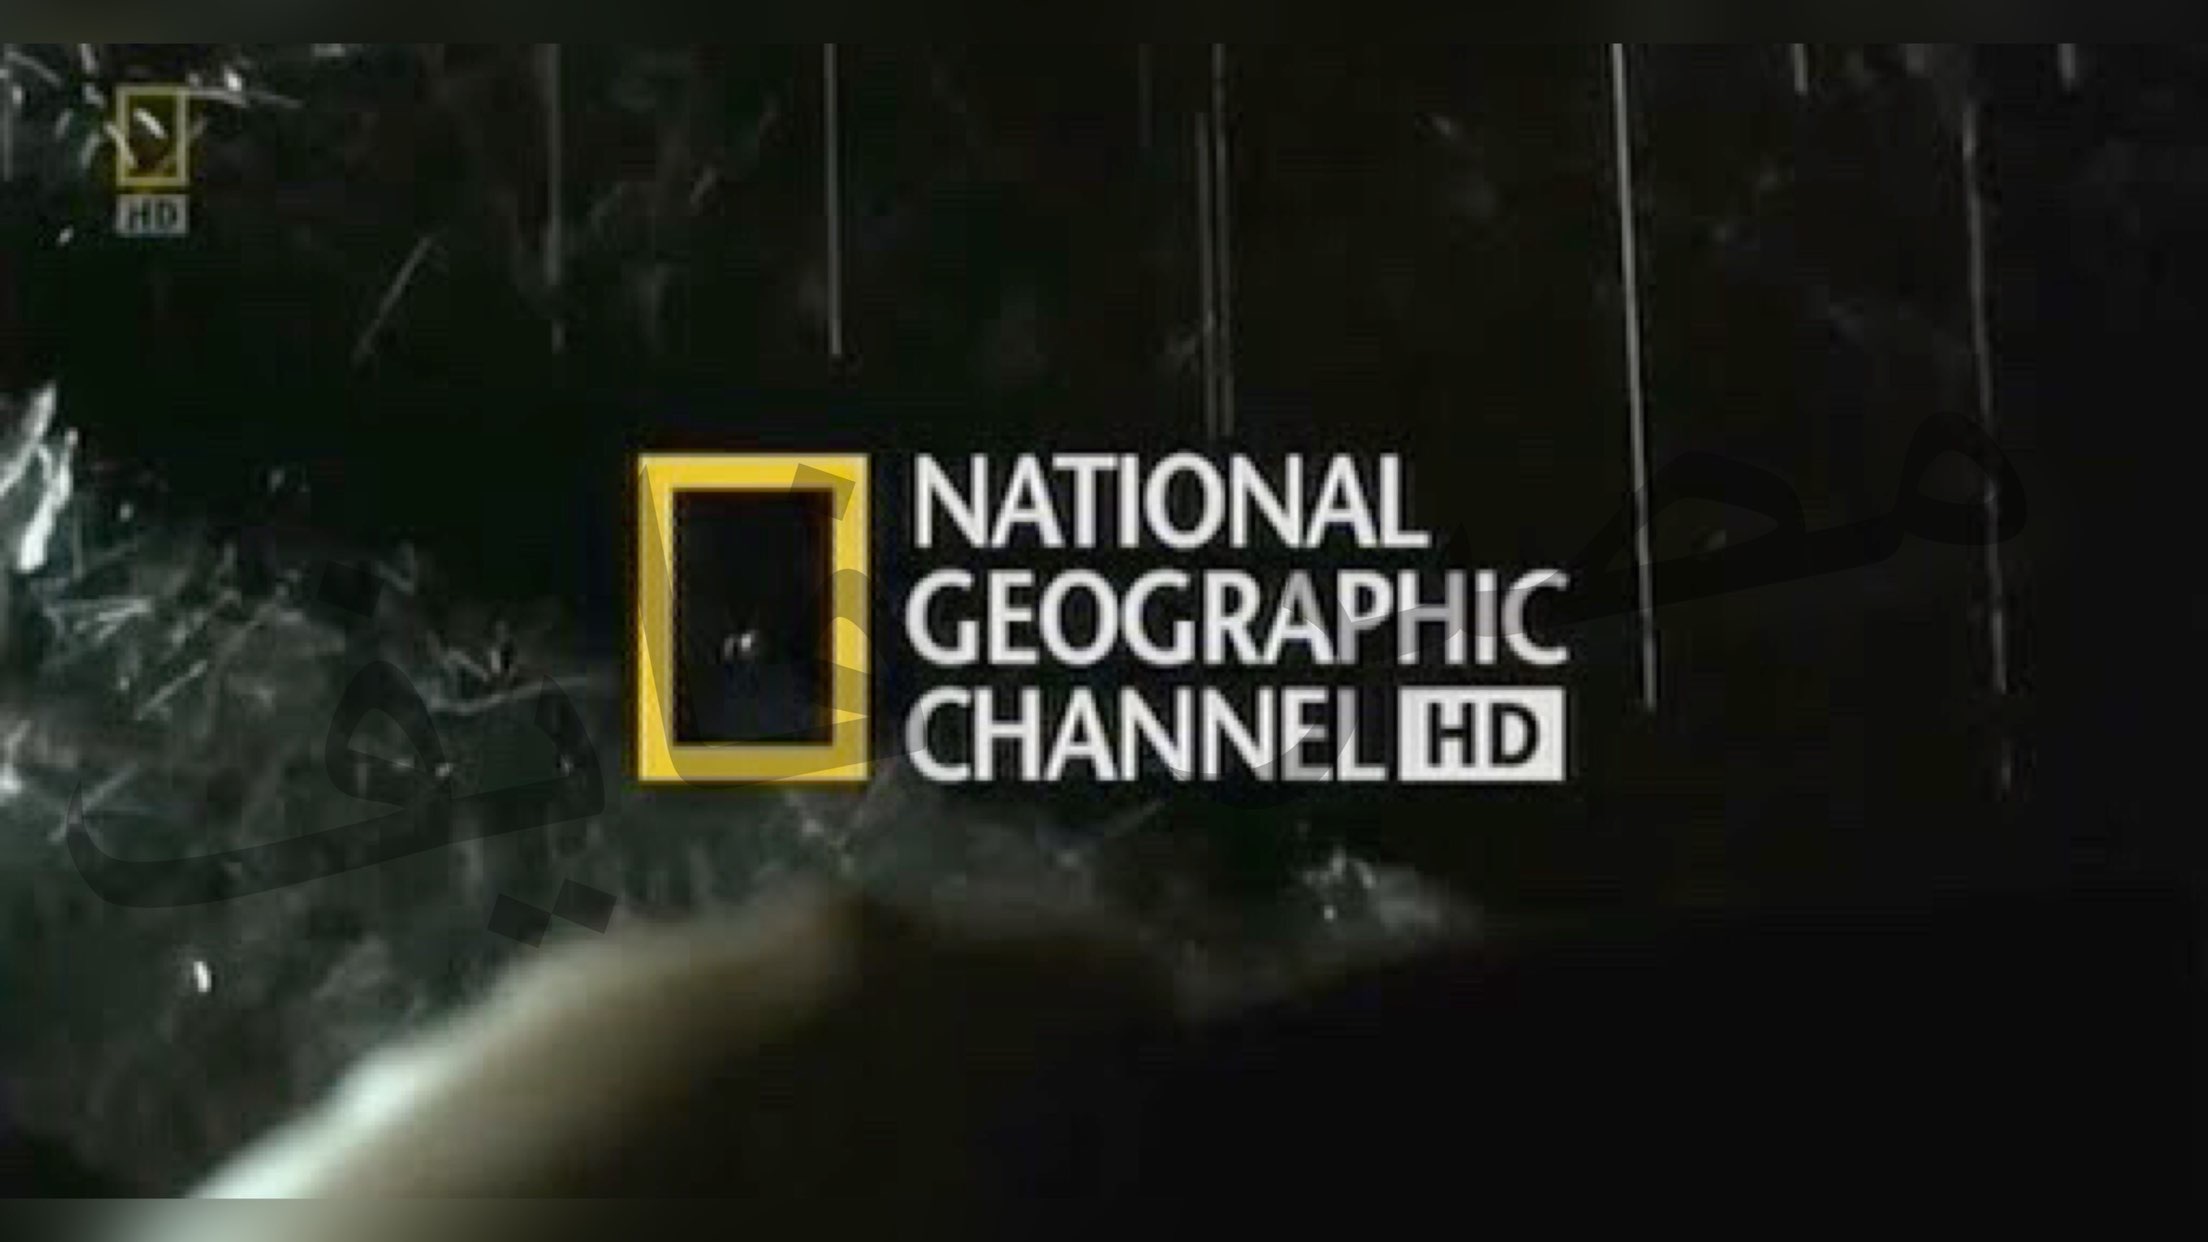 “اظبط الآن” تردد قناة ناشيونال جيوغرافيك HD الجديد لمشاهدة أفلام الطبيعة الوثائقية بكل وضوح